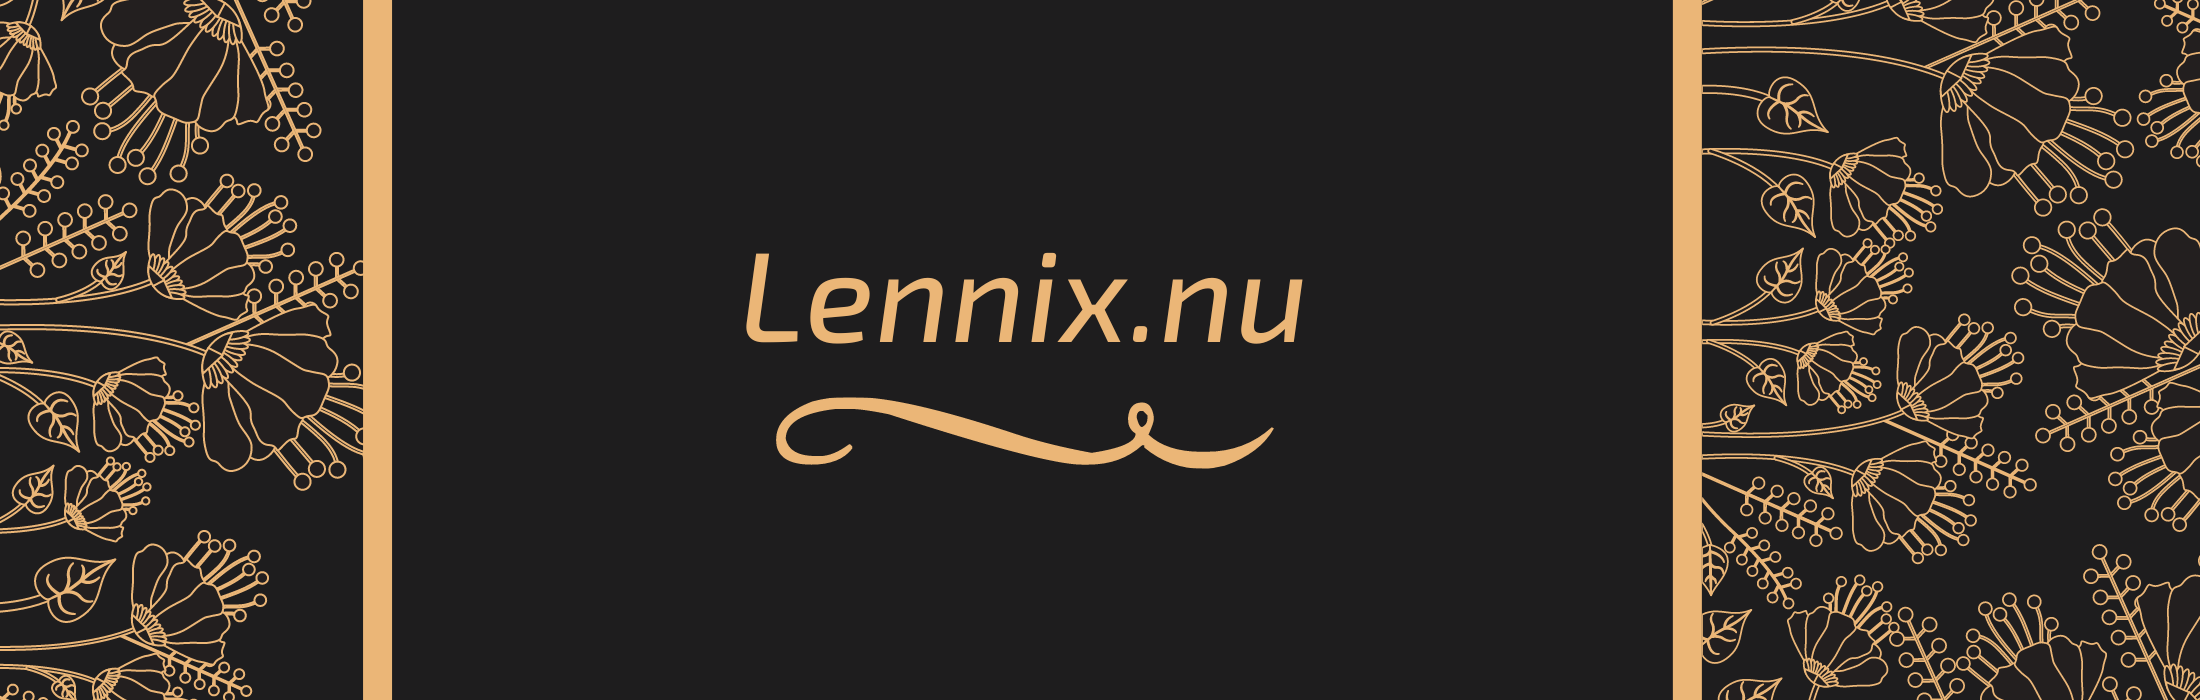 Lennix.nu